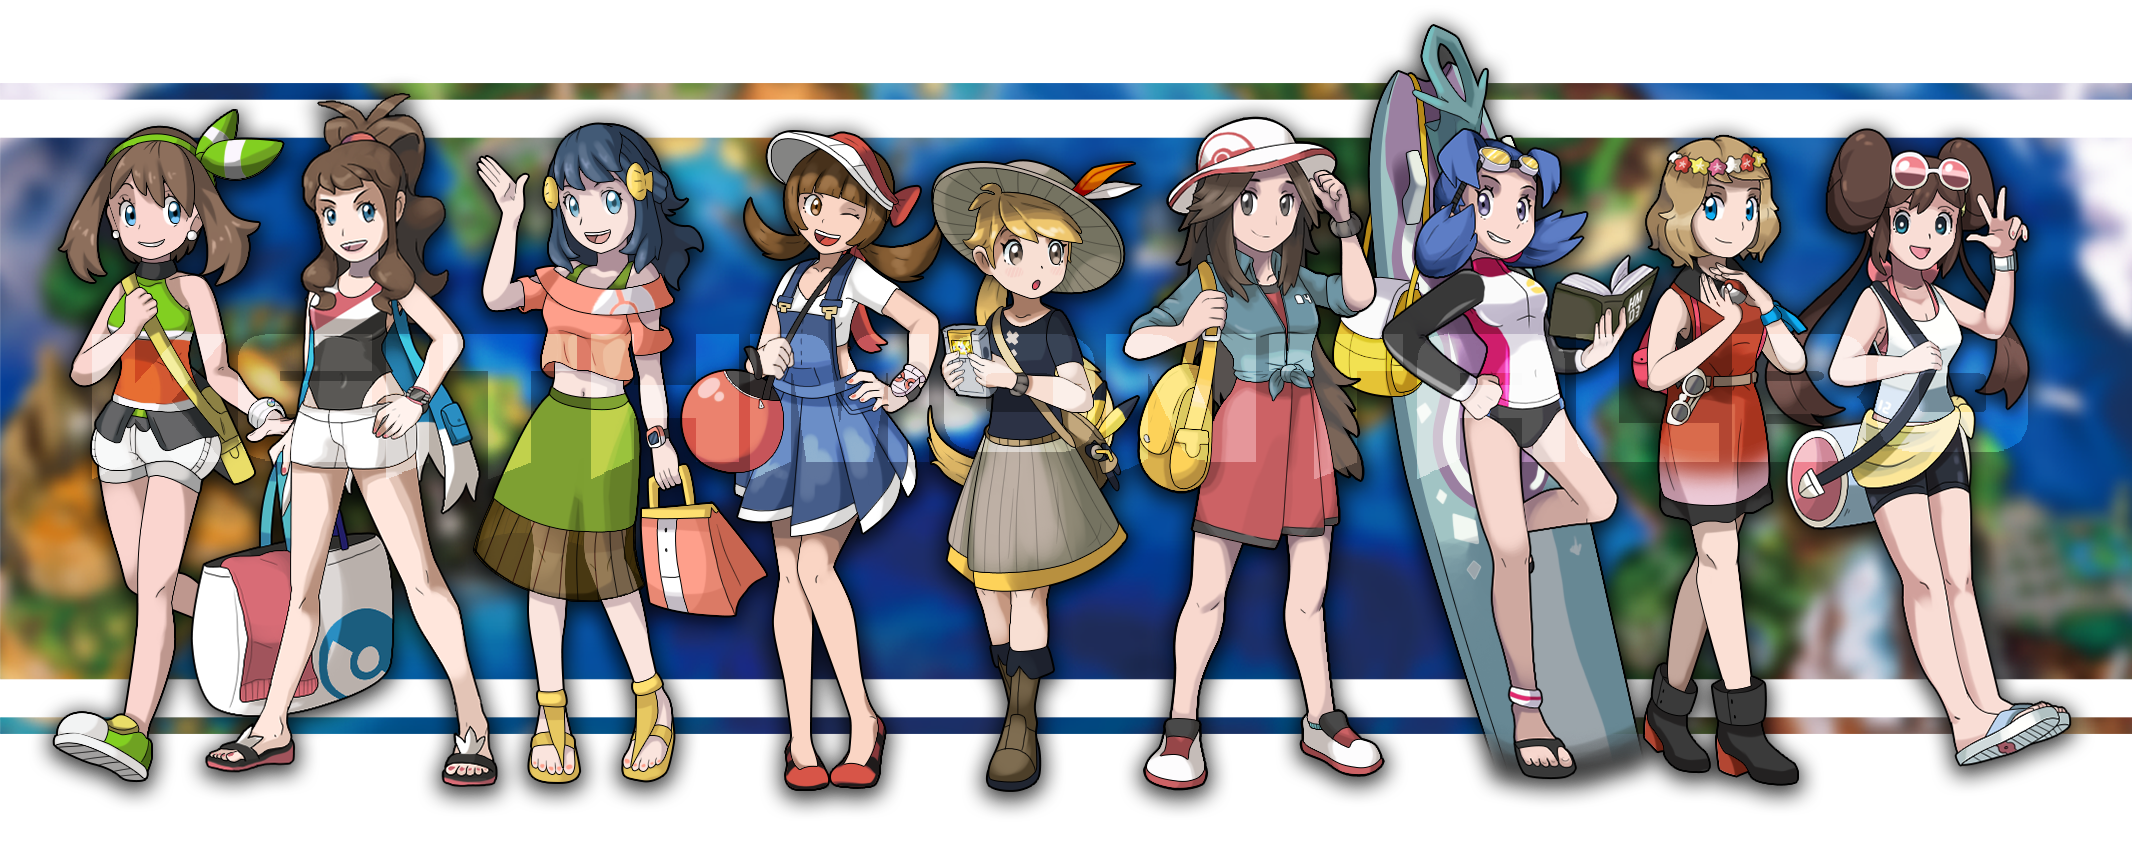 Alola region outfits in Pokemon GO. by FMAandYGO5dsgirl on DeviantArt